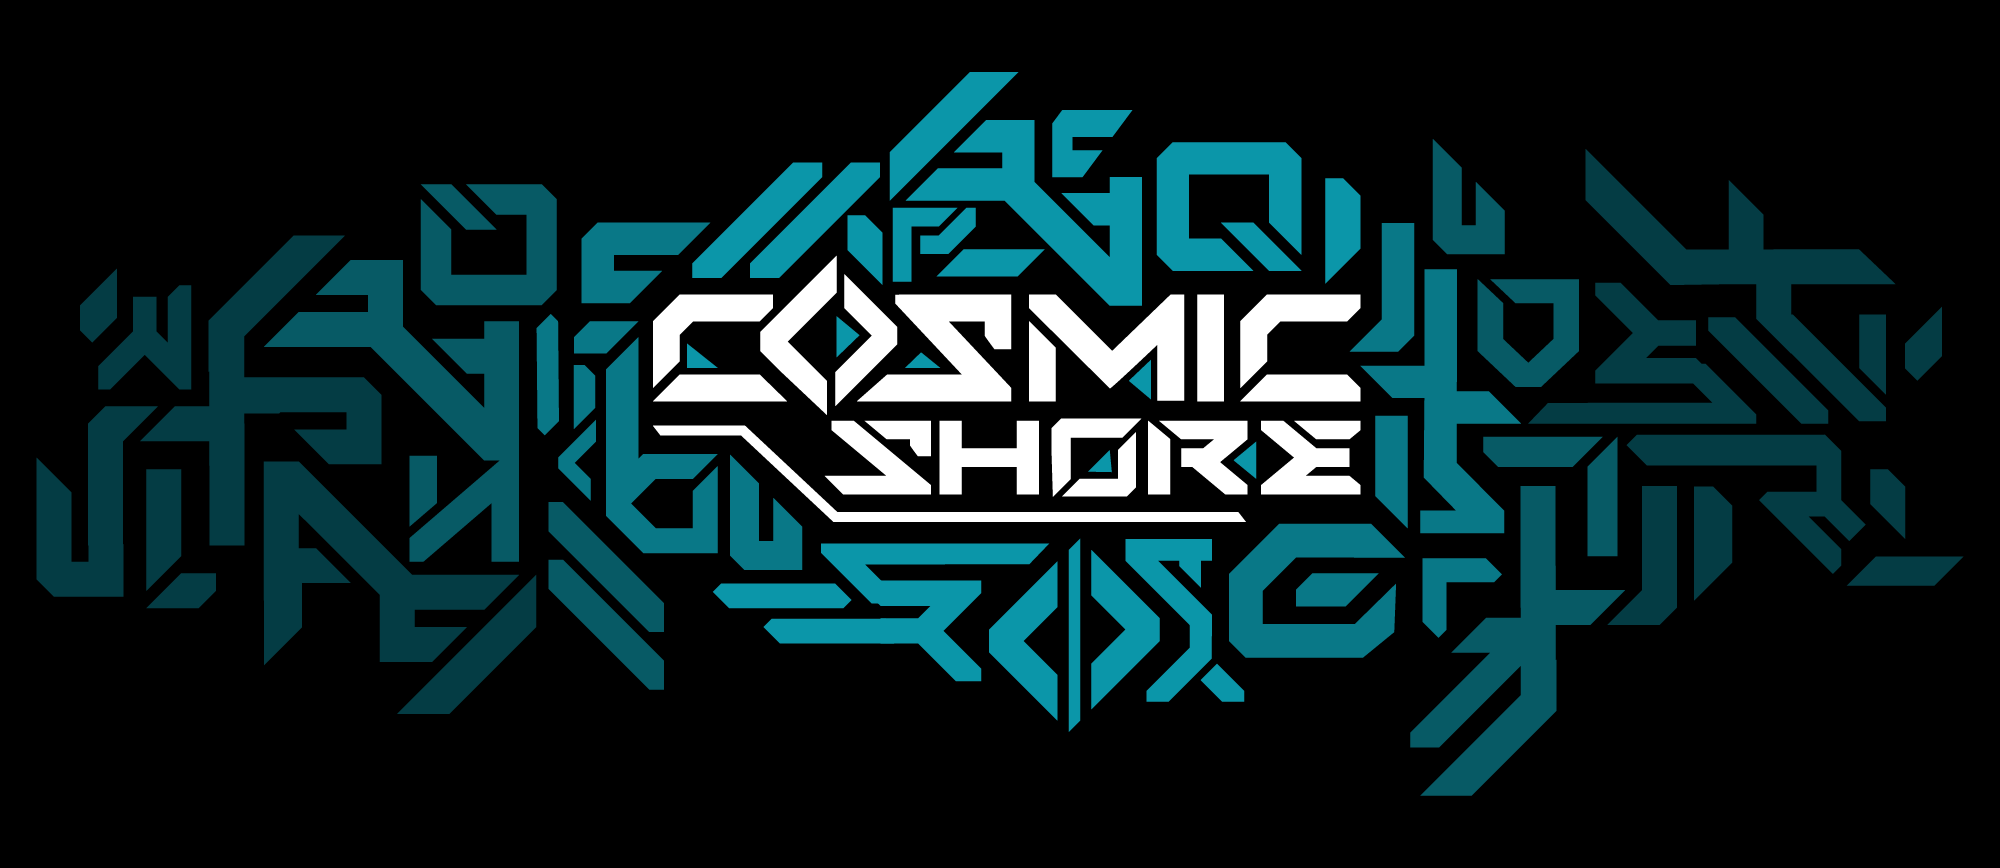 Cosmic Shore Log